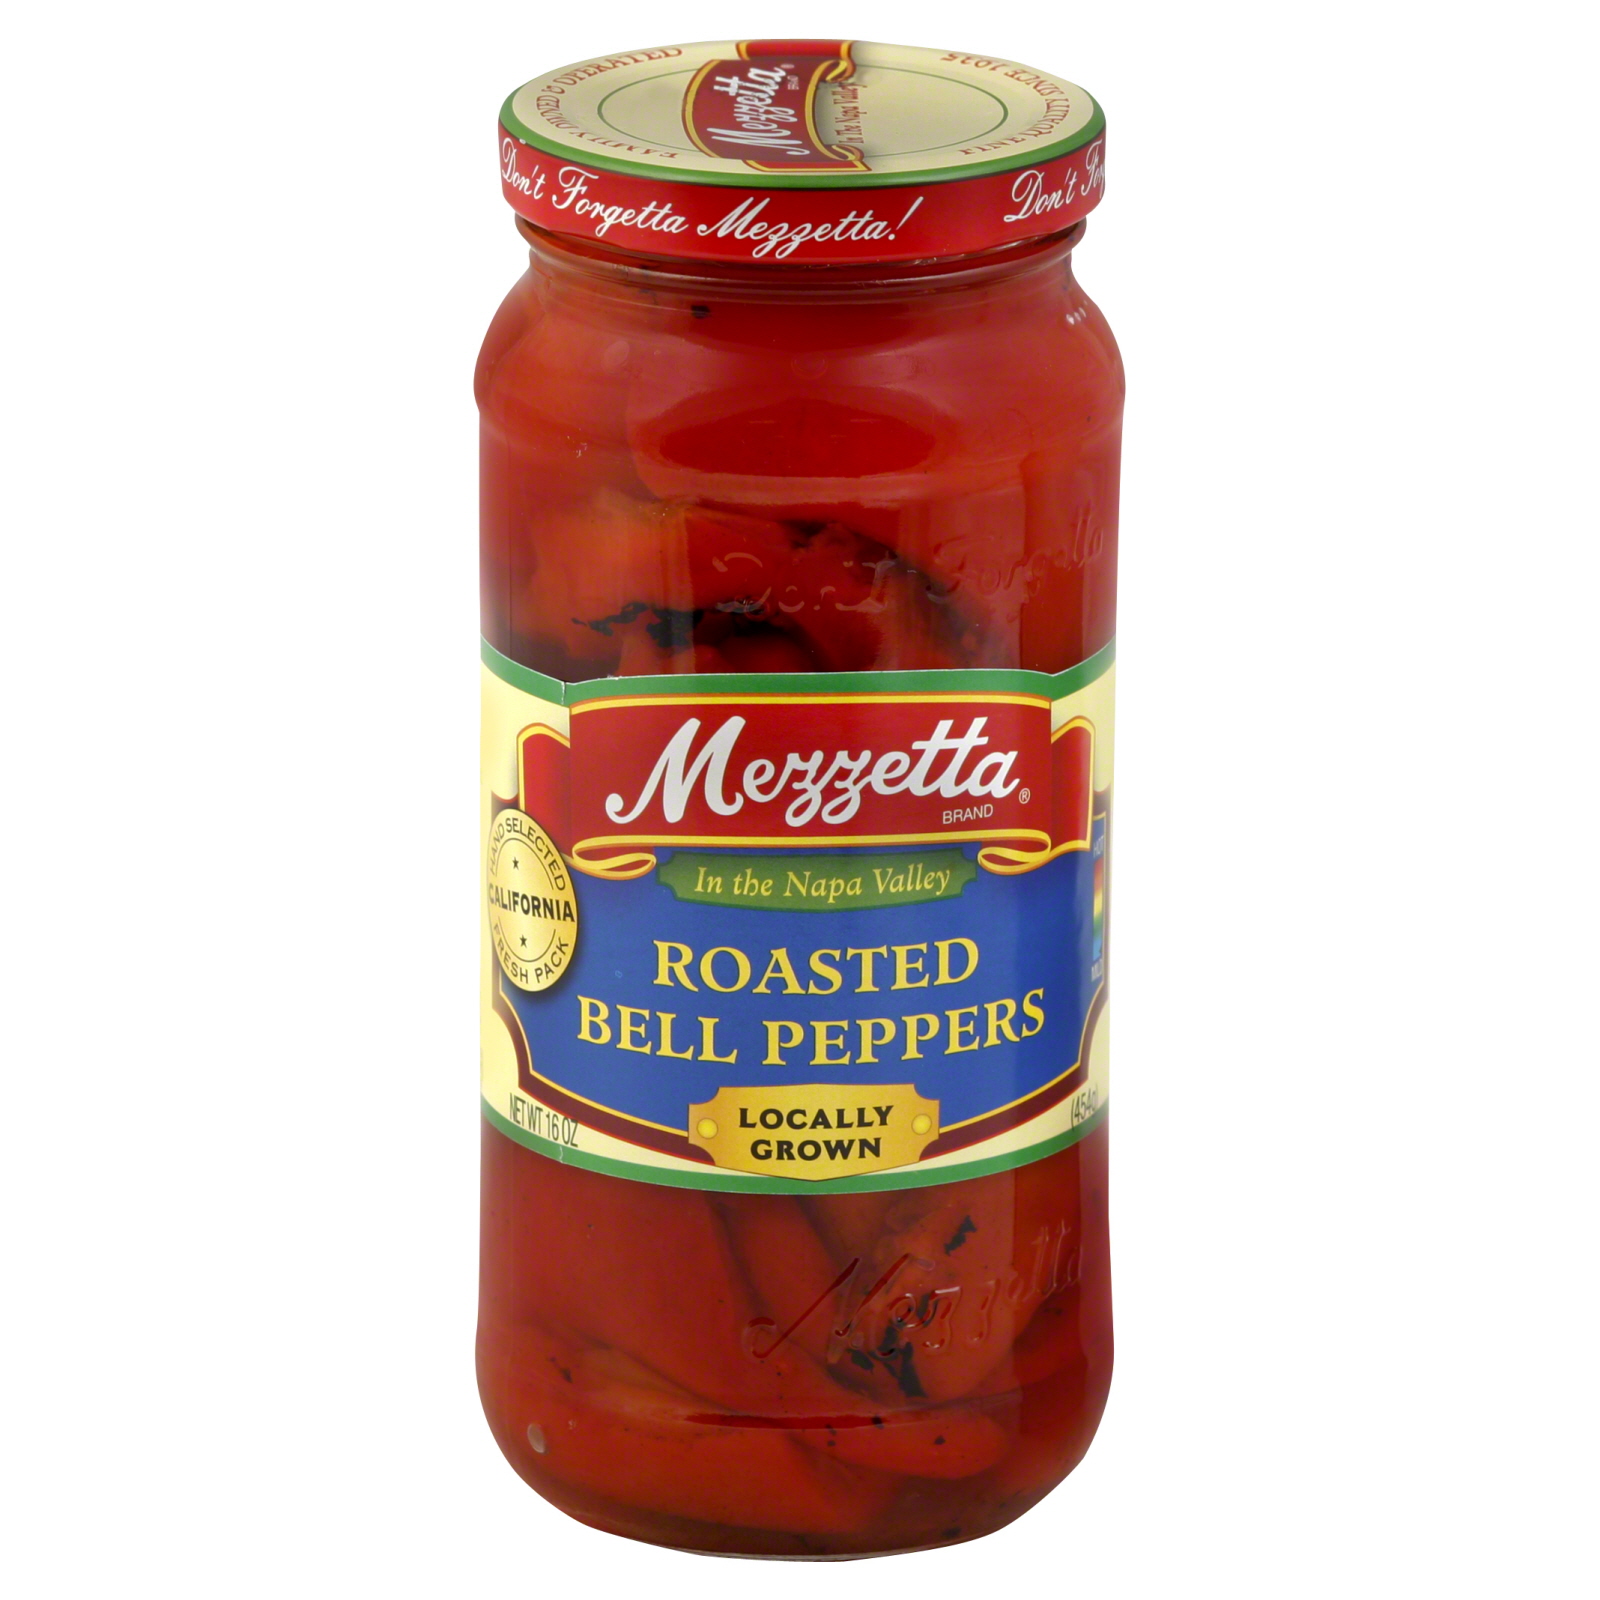 Mezzetta Roasted Bell Peppers, 15 oz (425 g)